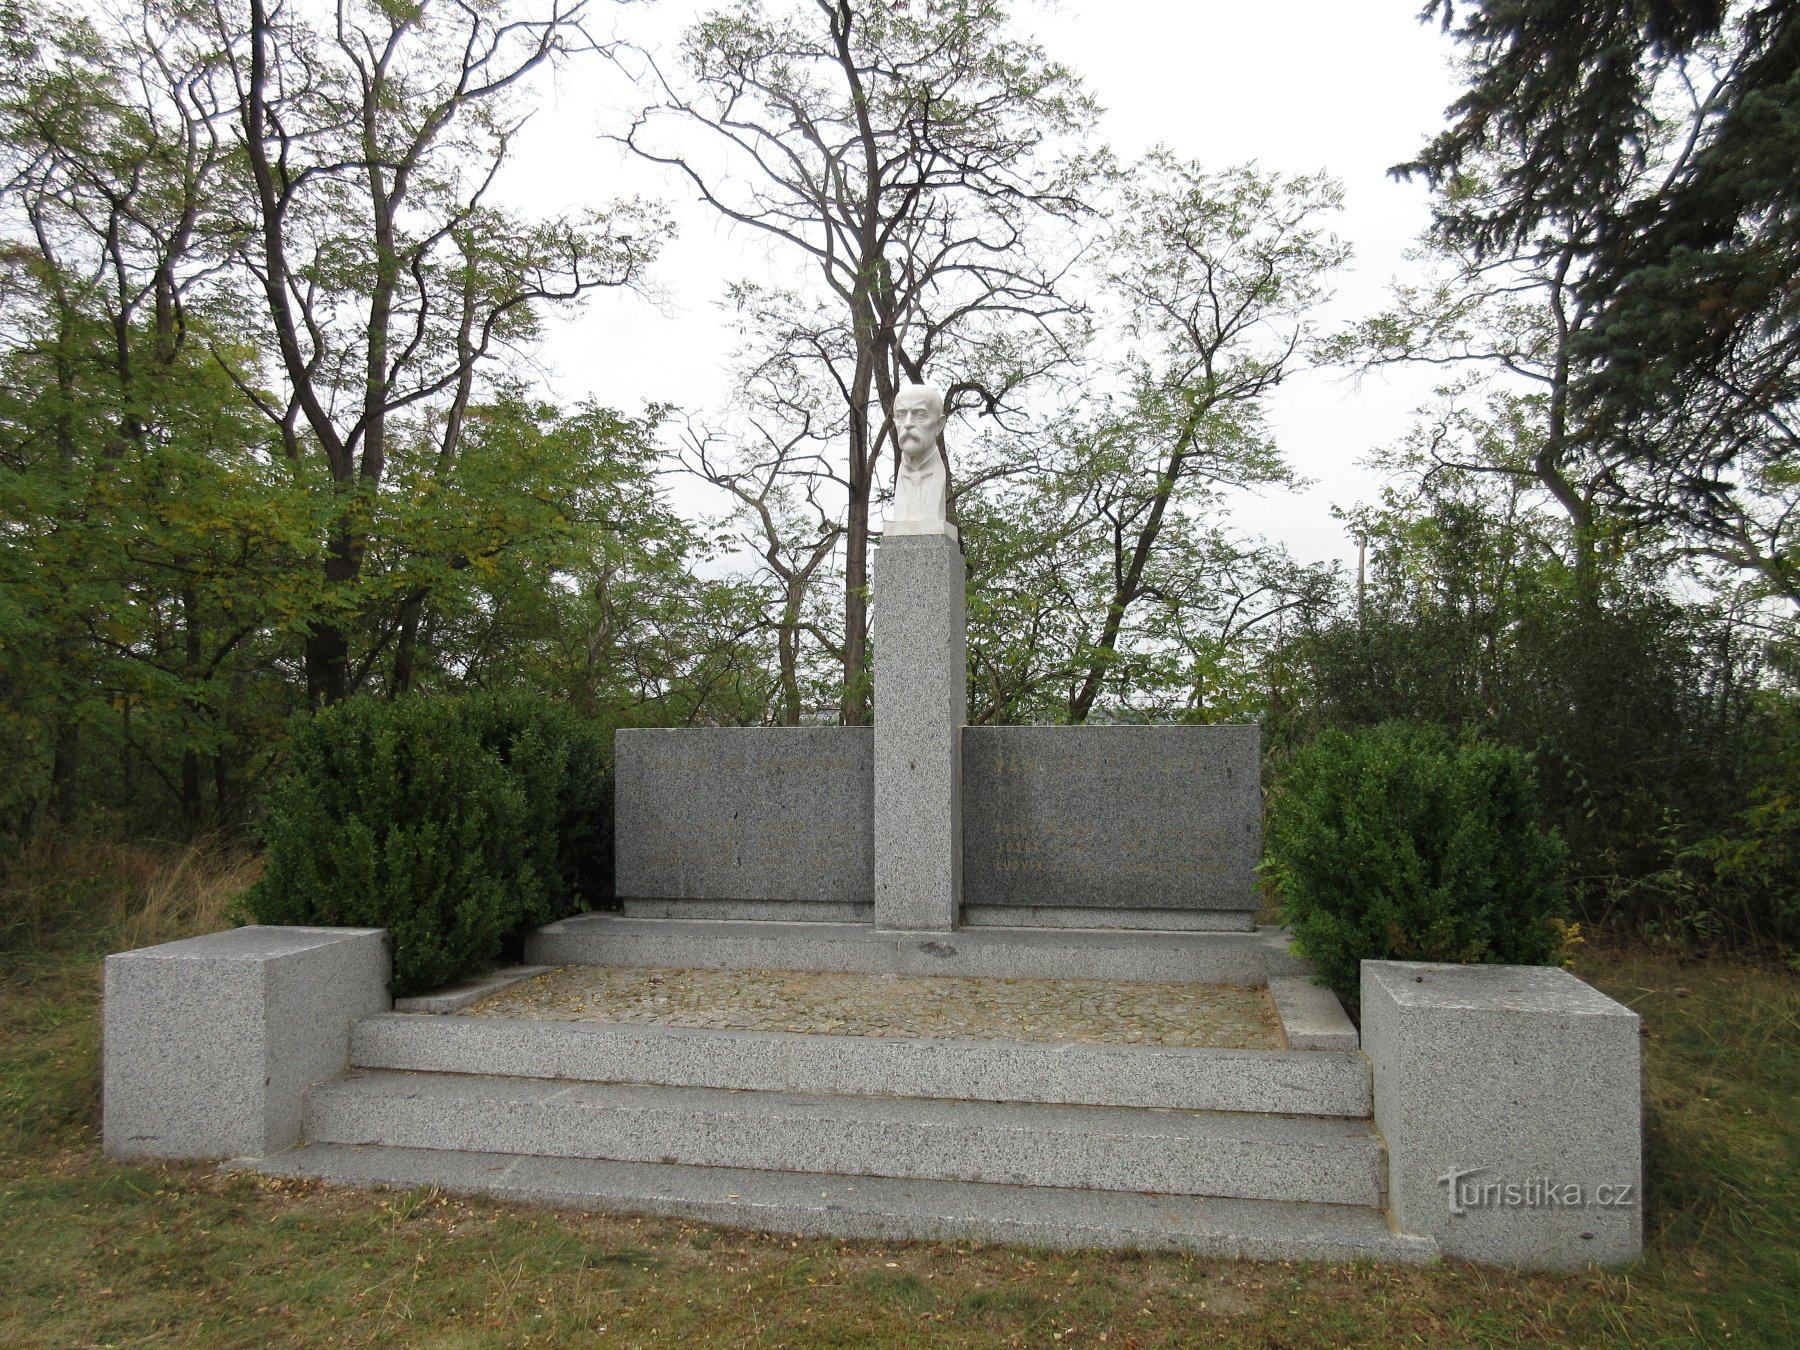 Đài tưởng niệm những người đã chết trong Thế chiến thứ nhất và thứ hai